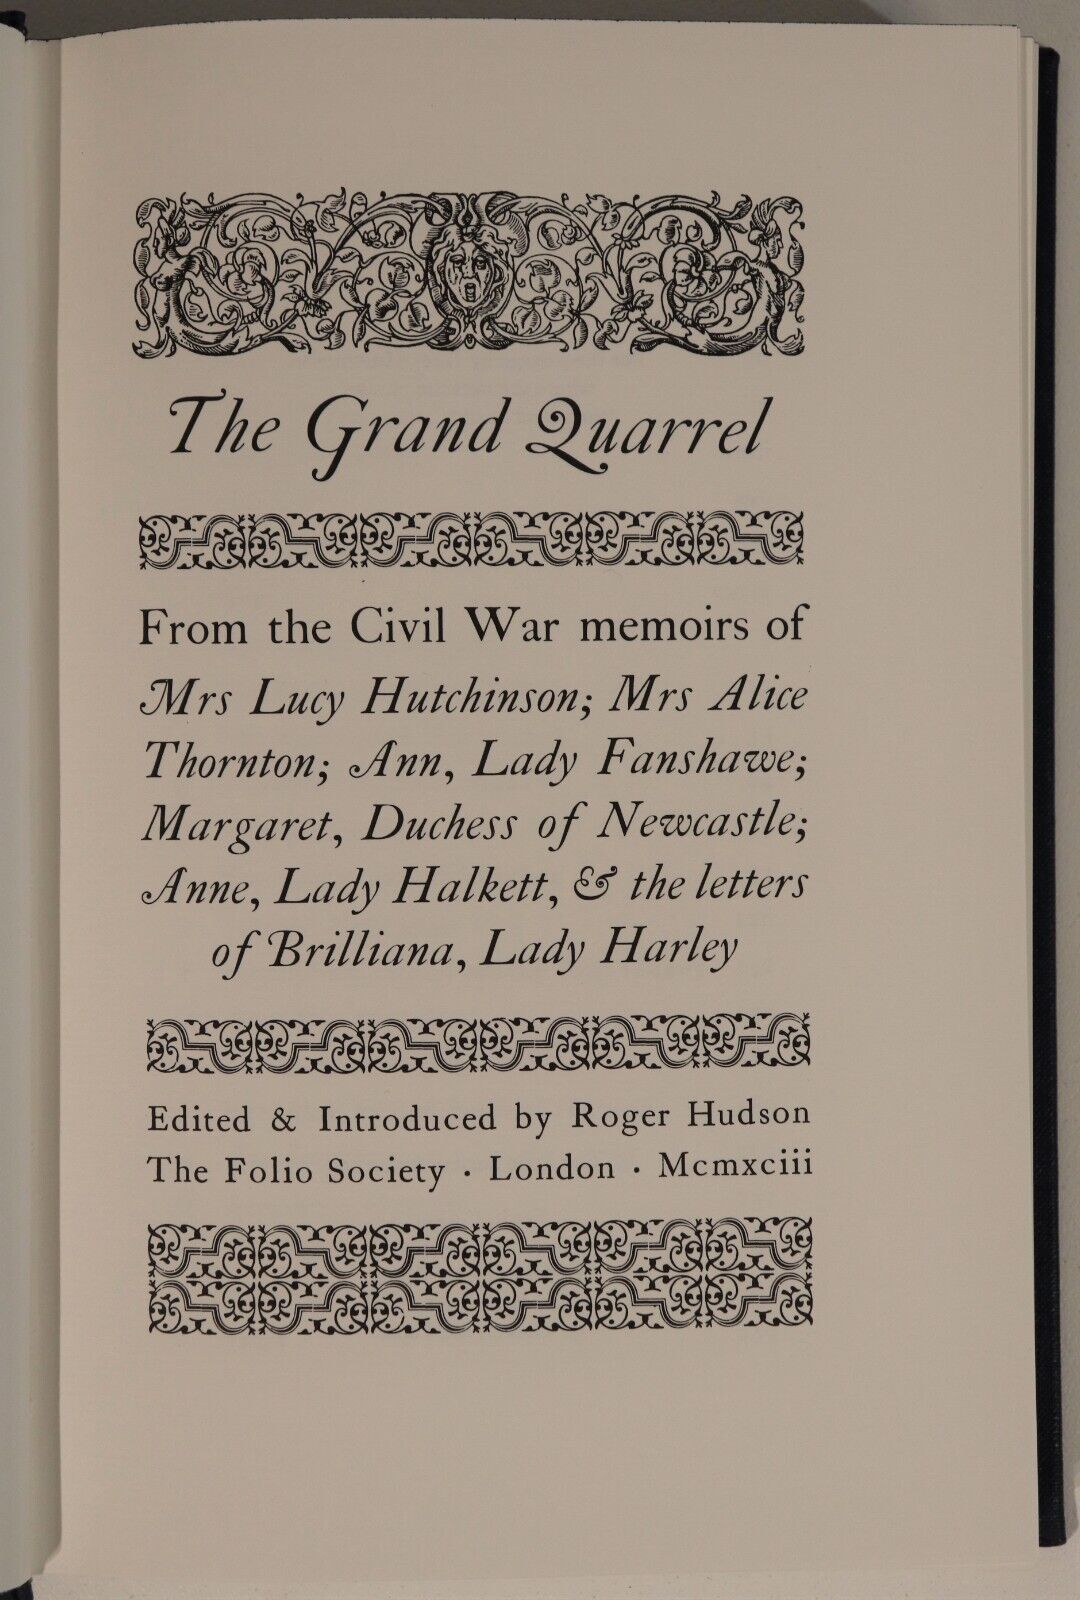 The Grand Quarrel - 1993 - Folio Society American Civil War Book